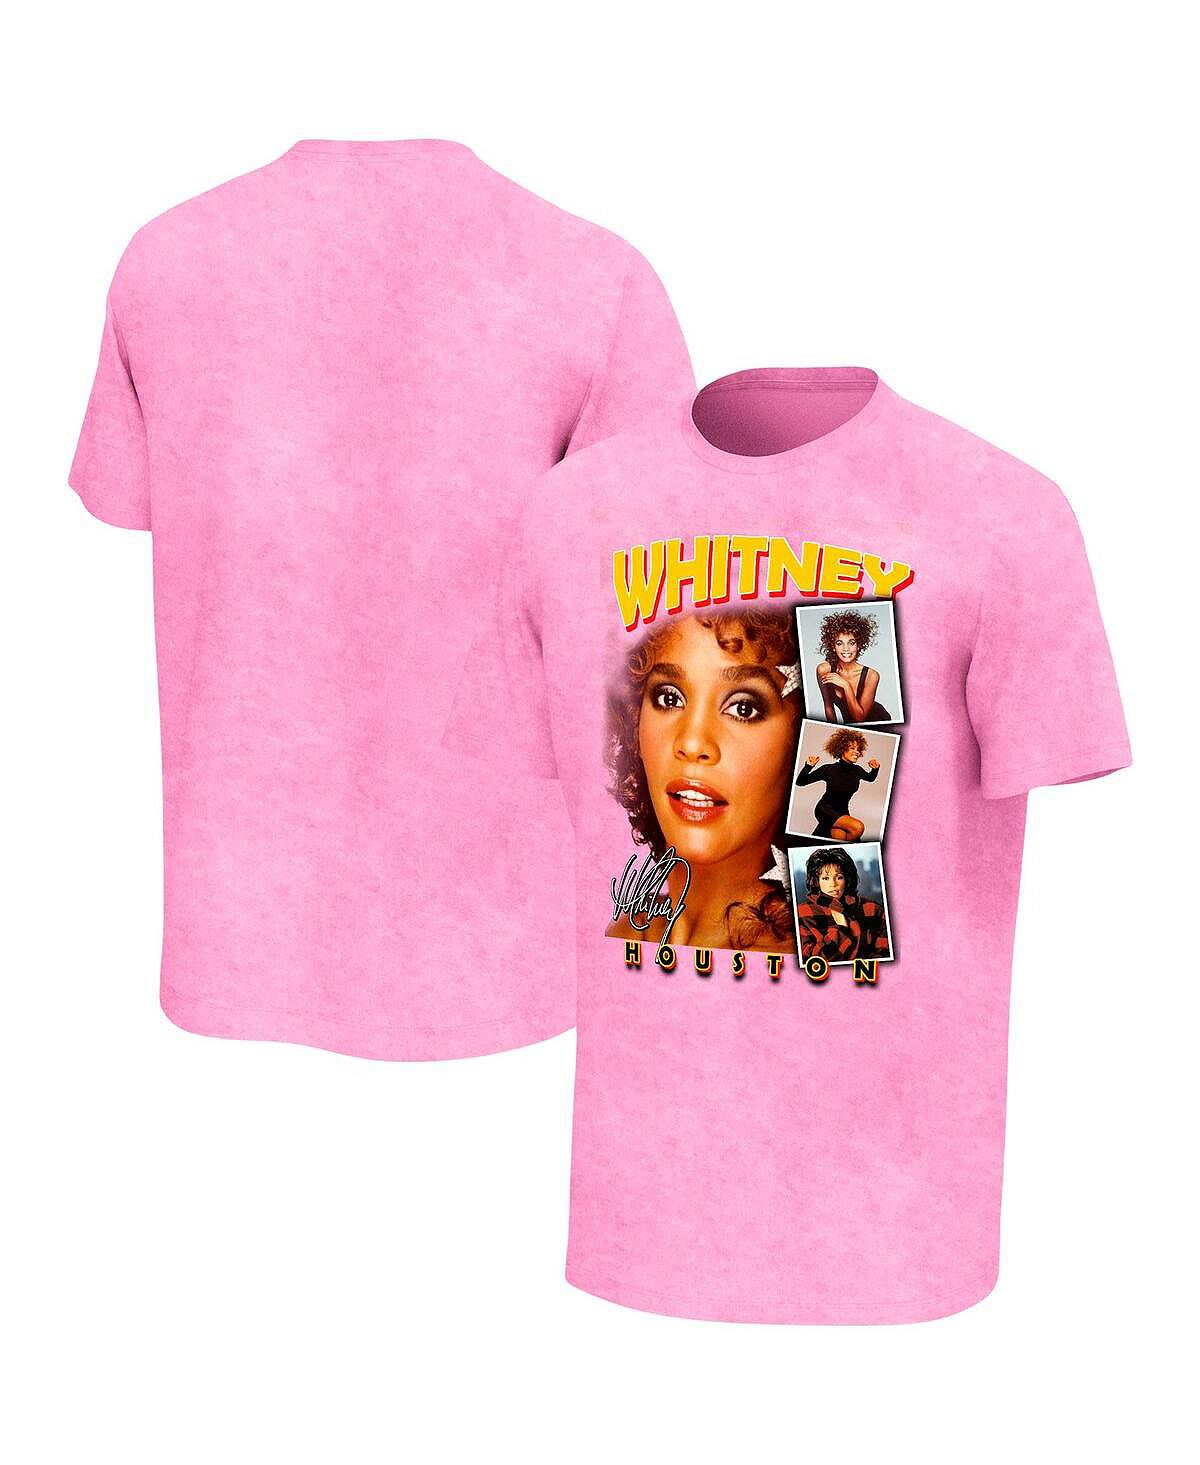 Мужская розовая стираная футболка Whitney Houston Photo Collage Philcos